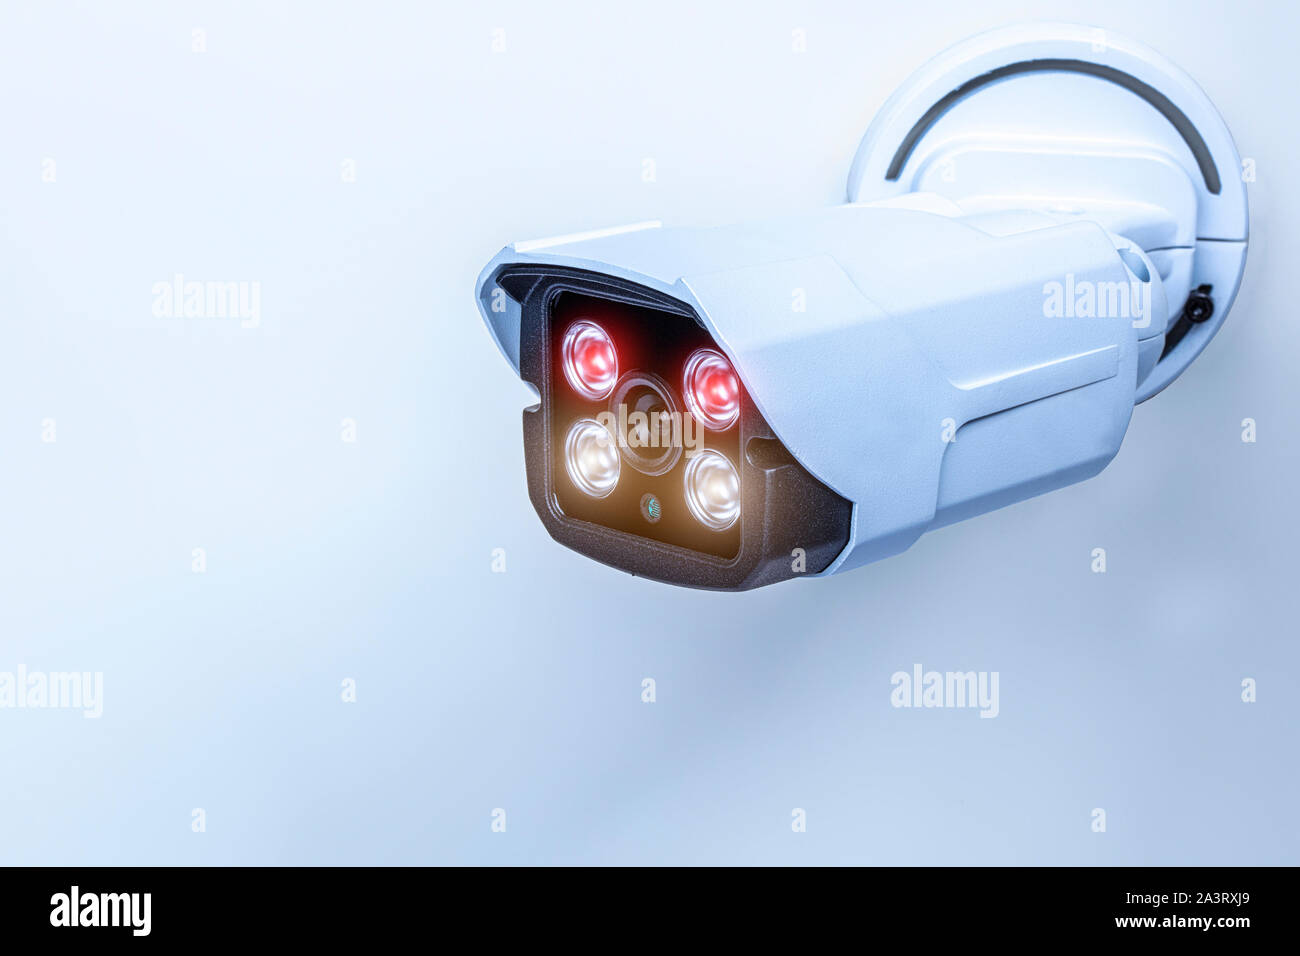 Détail d'une caméra de surveillance avec la technologie infrarouge pour la vision nocturne. Concept de sécurité. Banque D'Images